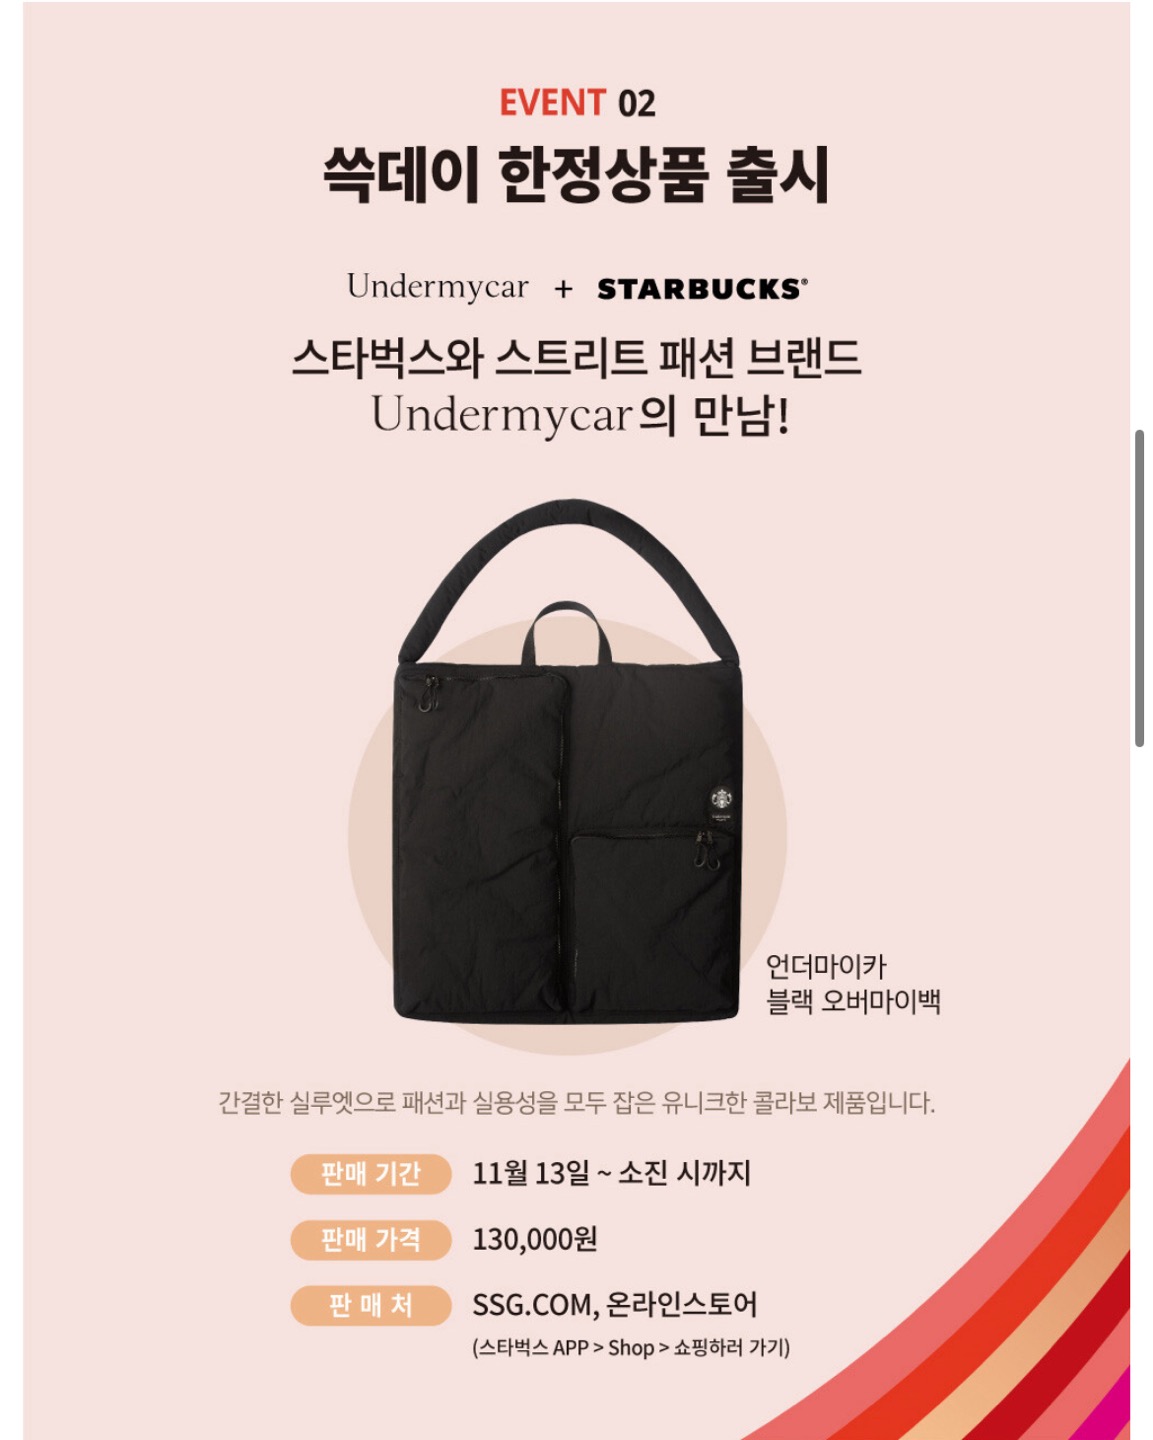 쓱데이 이벤트2 언더마이카+스타벅스 콜라보 제품 판매